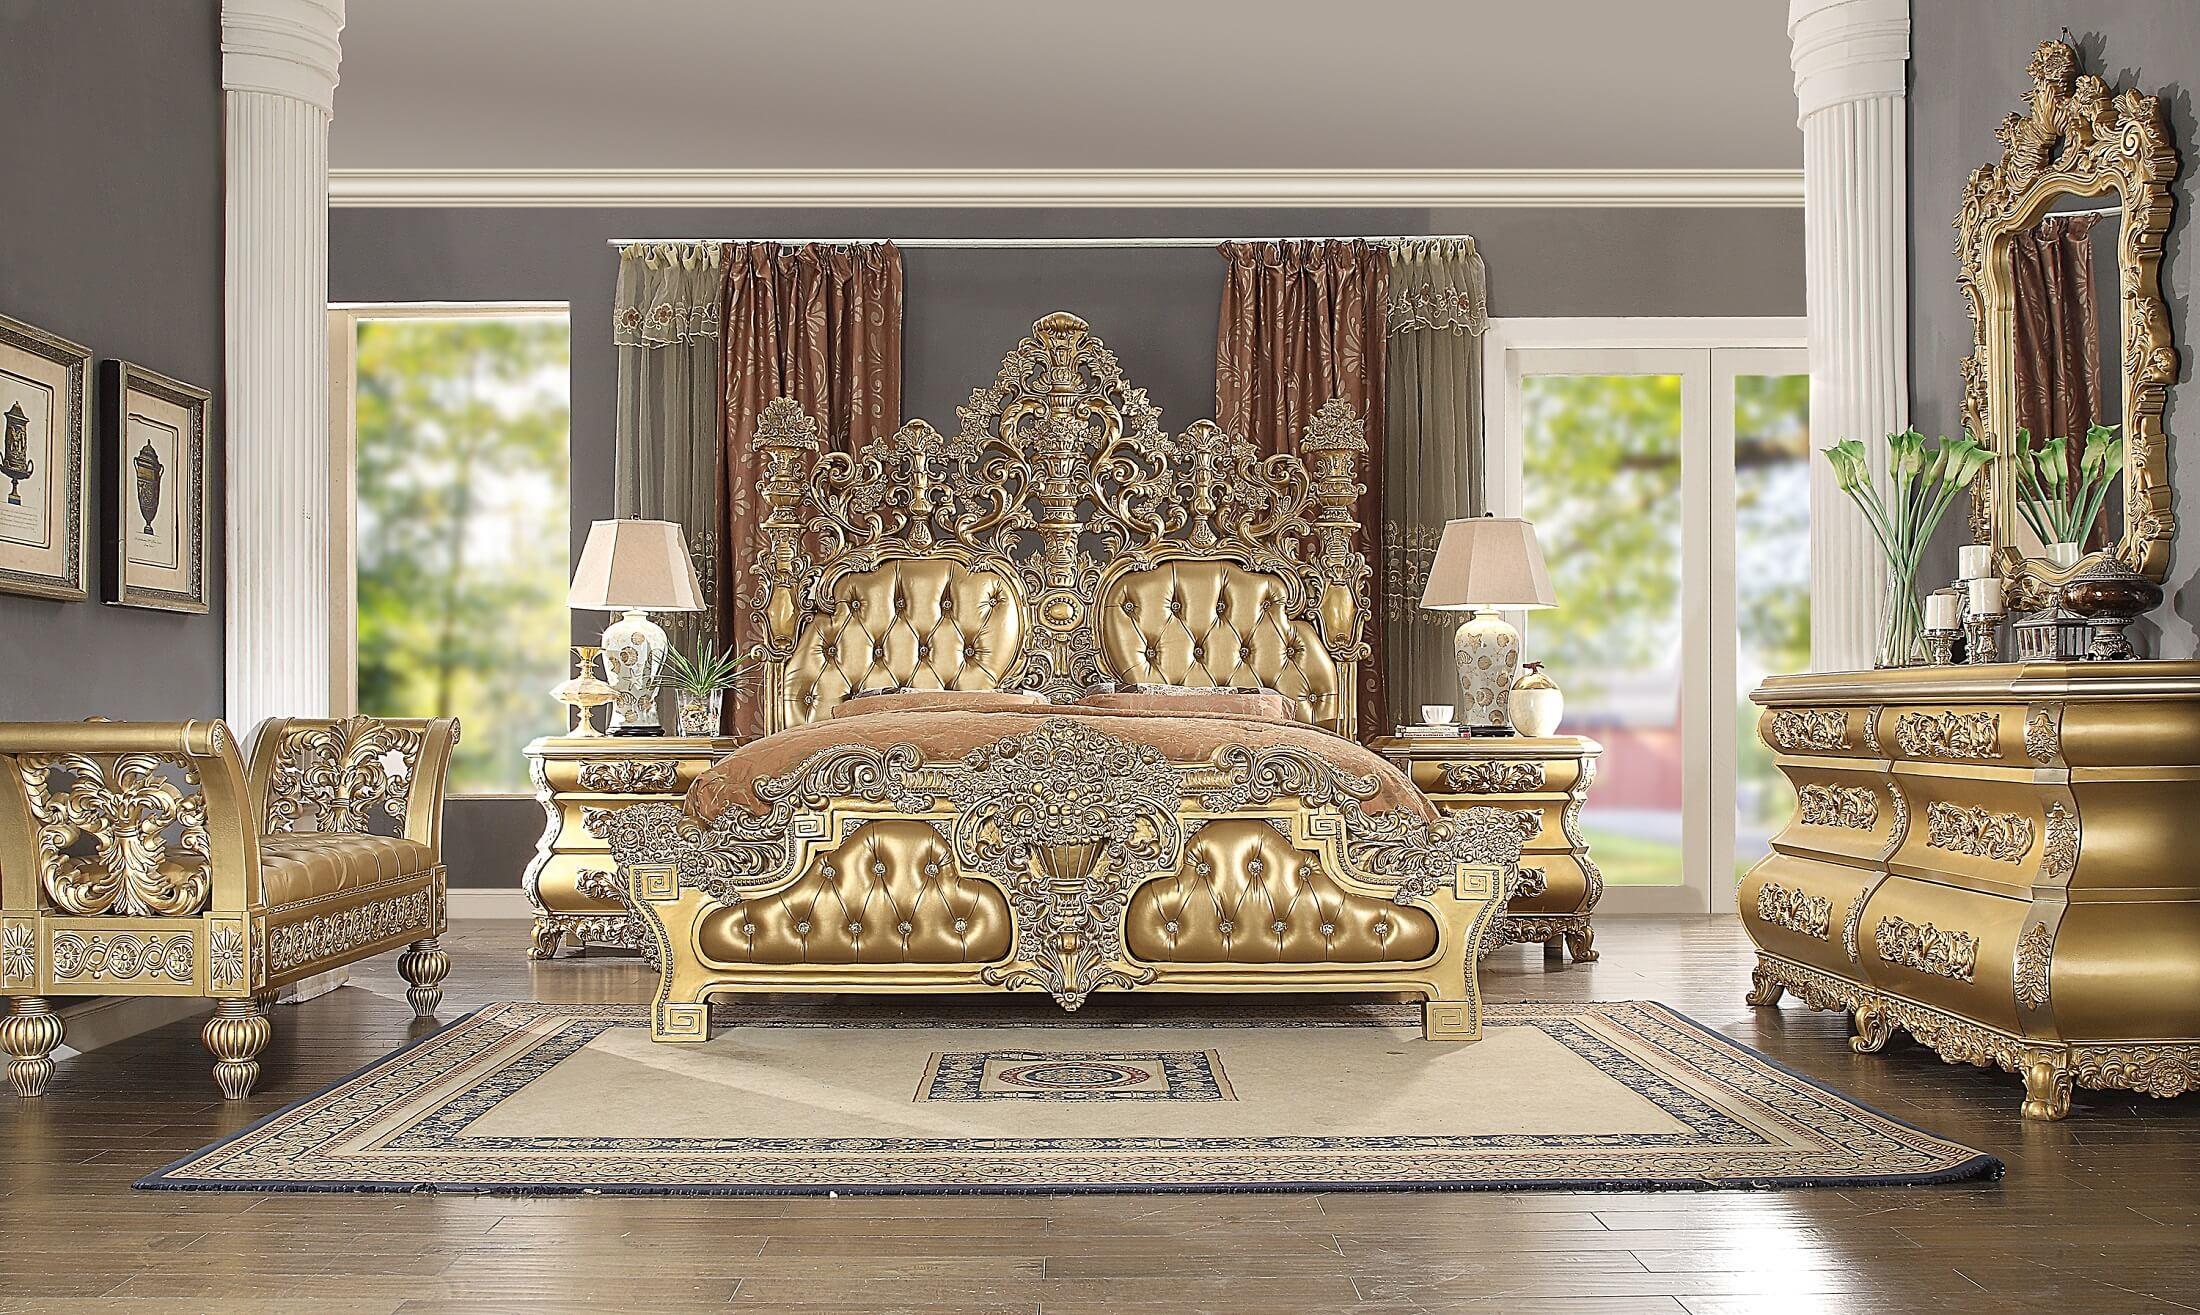 

    
Royal Gold KING Bedroom Set 6Pcs Carved Wood Seville BD00451EK ACME Traditional
